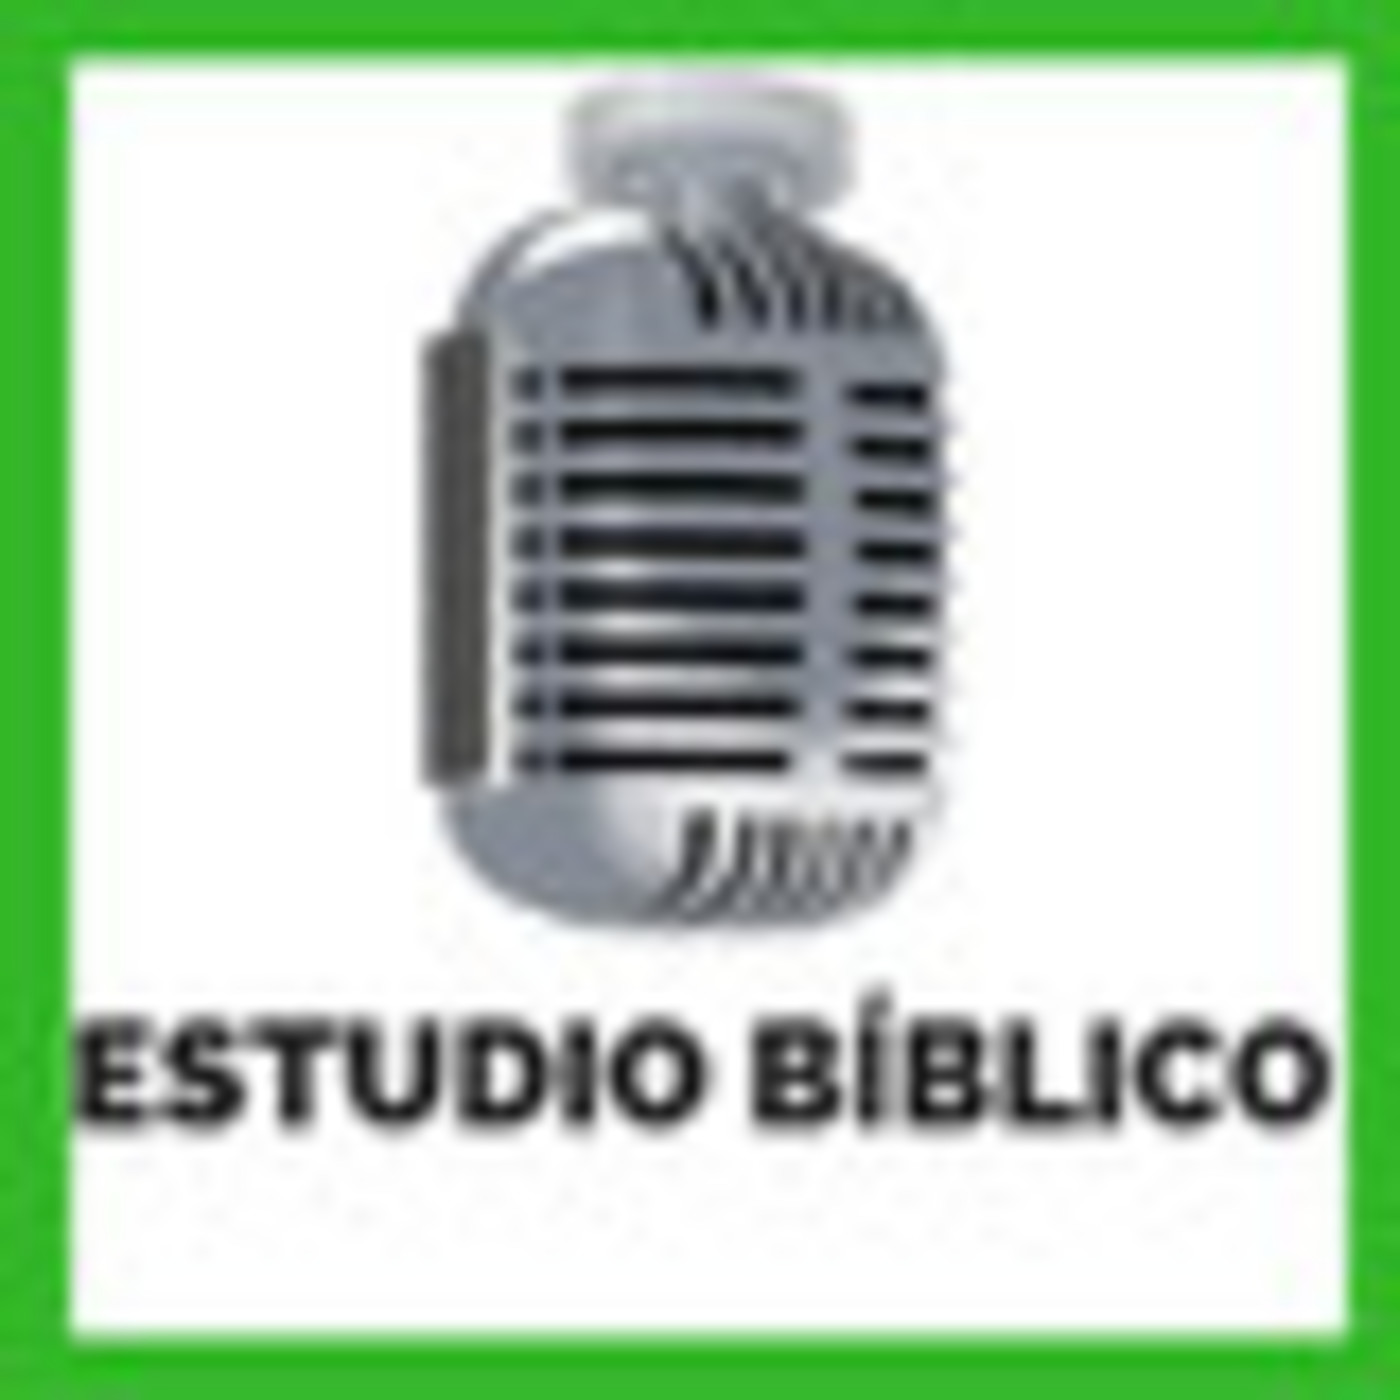 2019-07-28 | Estudio Bíblico | SERVIR A LOS NECESITADOS - EL RECLAMO RECURRENTE DE JUSTICIA